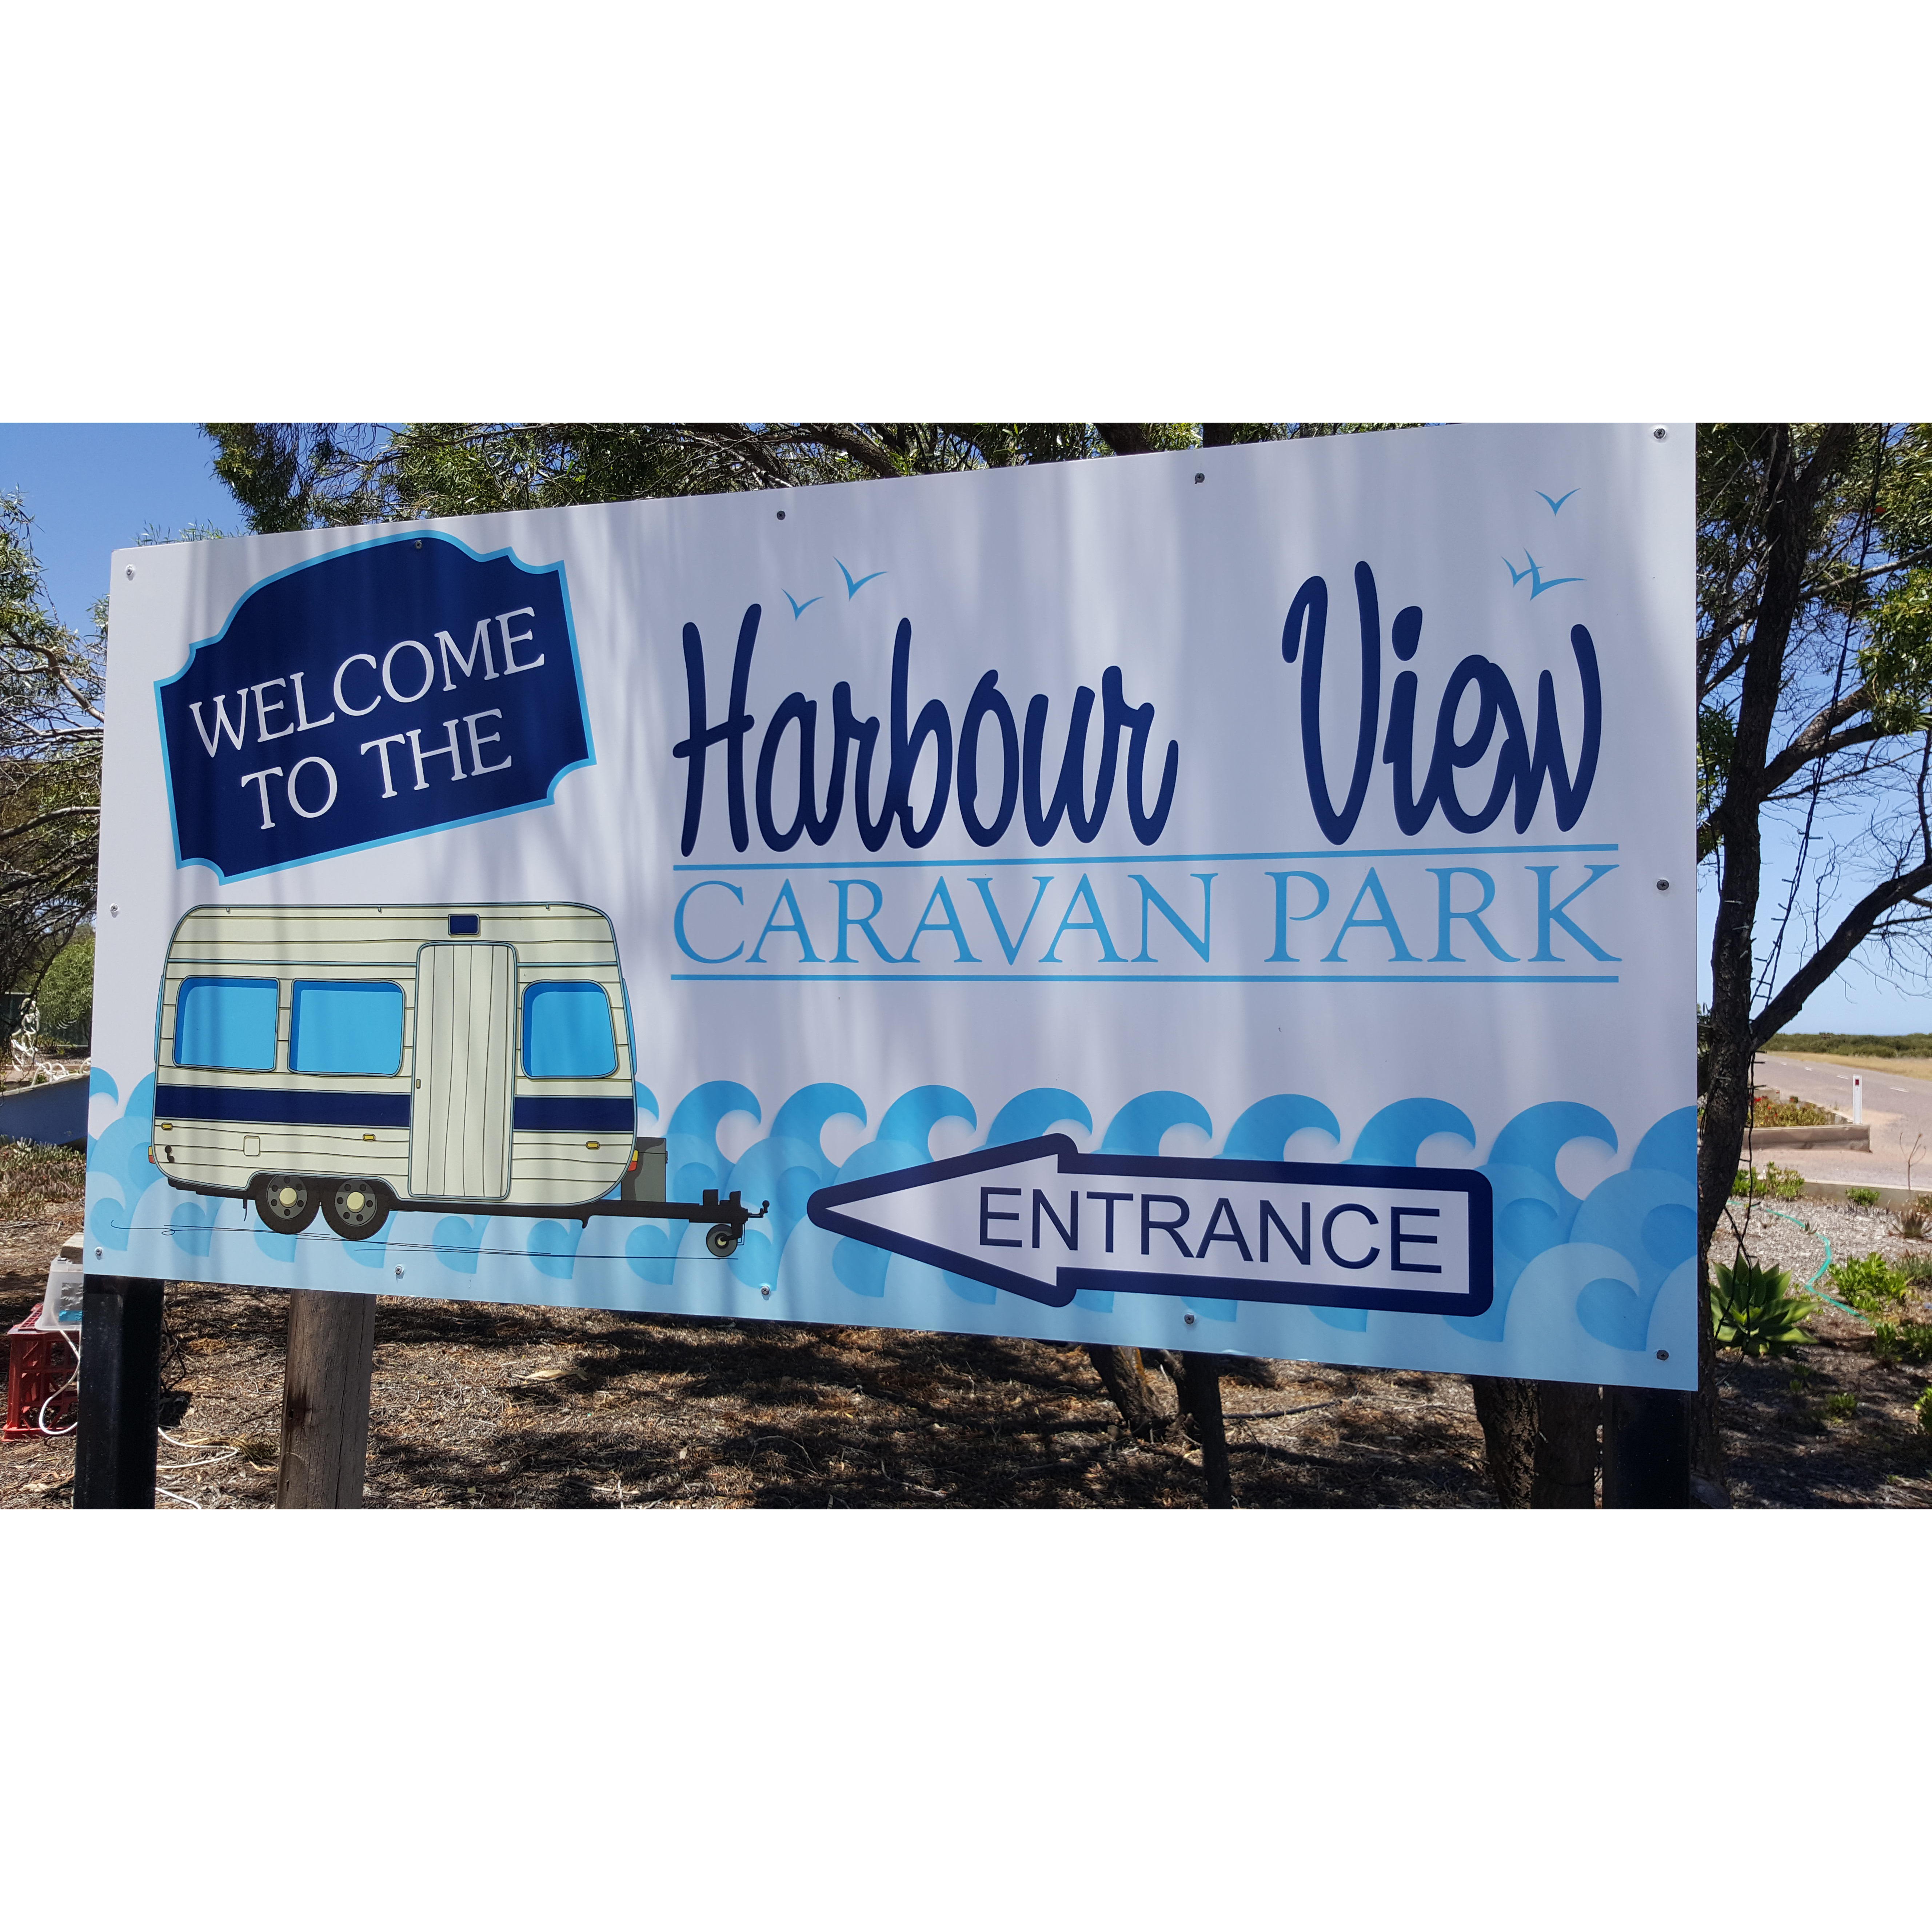 Harbour View Caravan Park - Cowell, SA 5602 - (08) 8629 2216 | ShowMeLocal.com